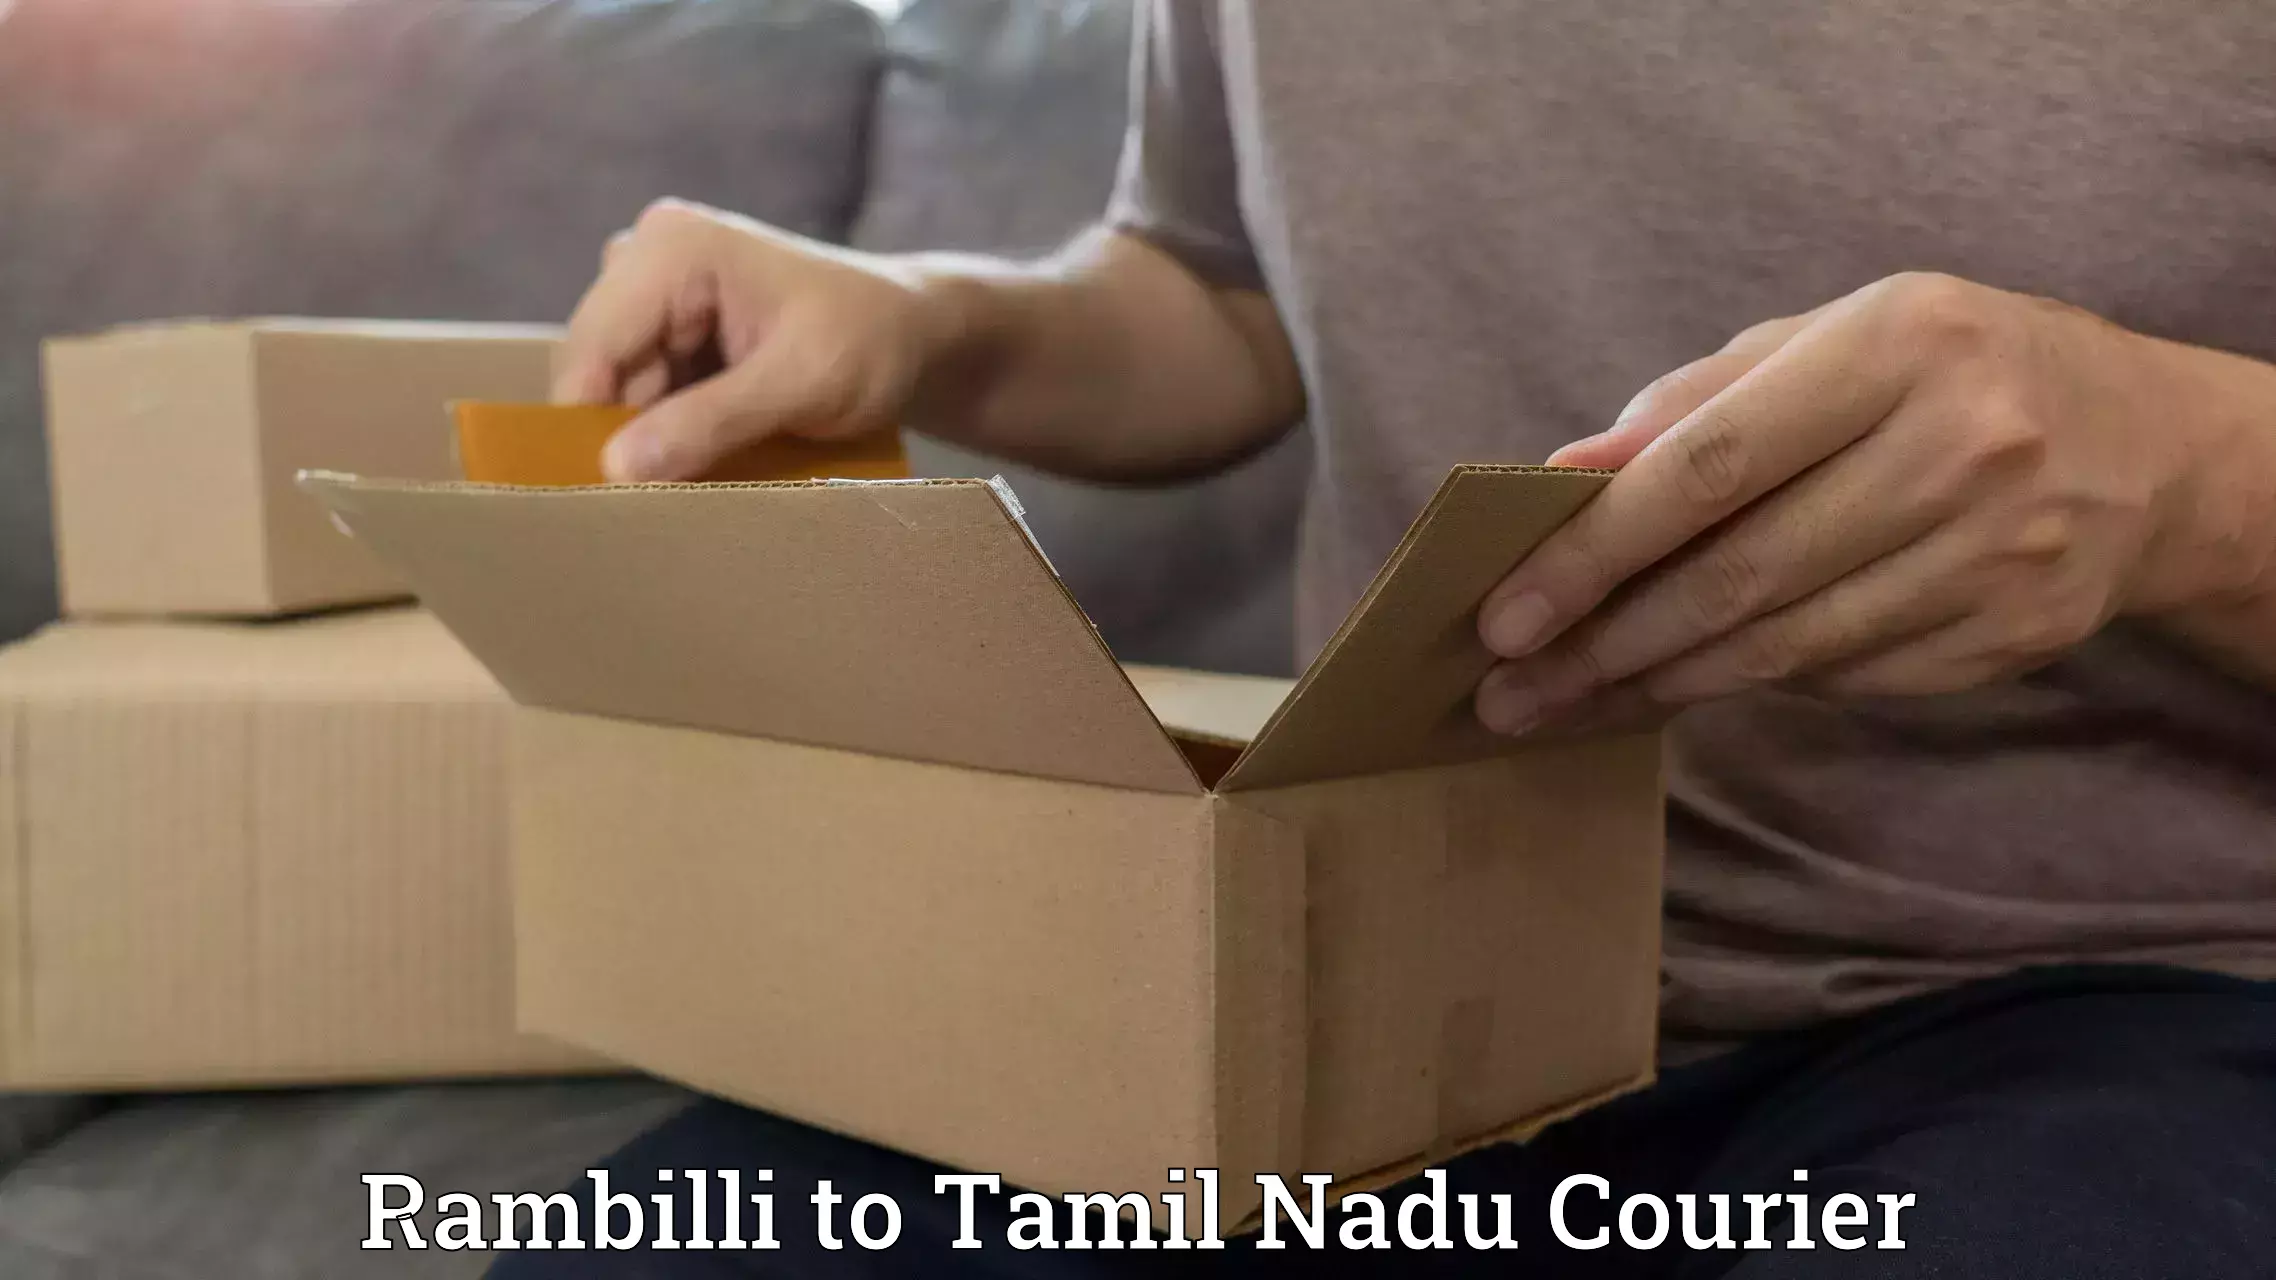 Pharmaceutical courier Rambilli to Chennai Port